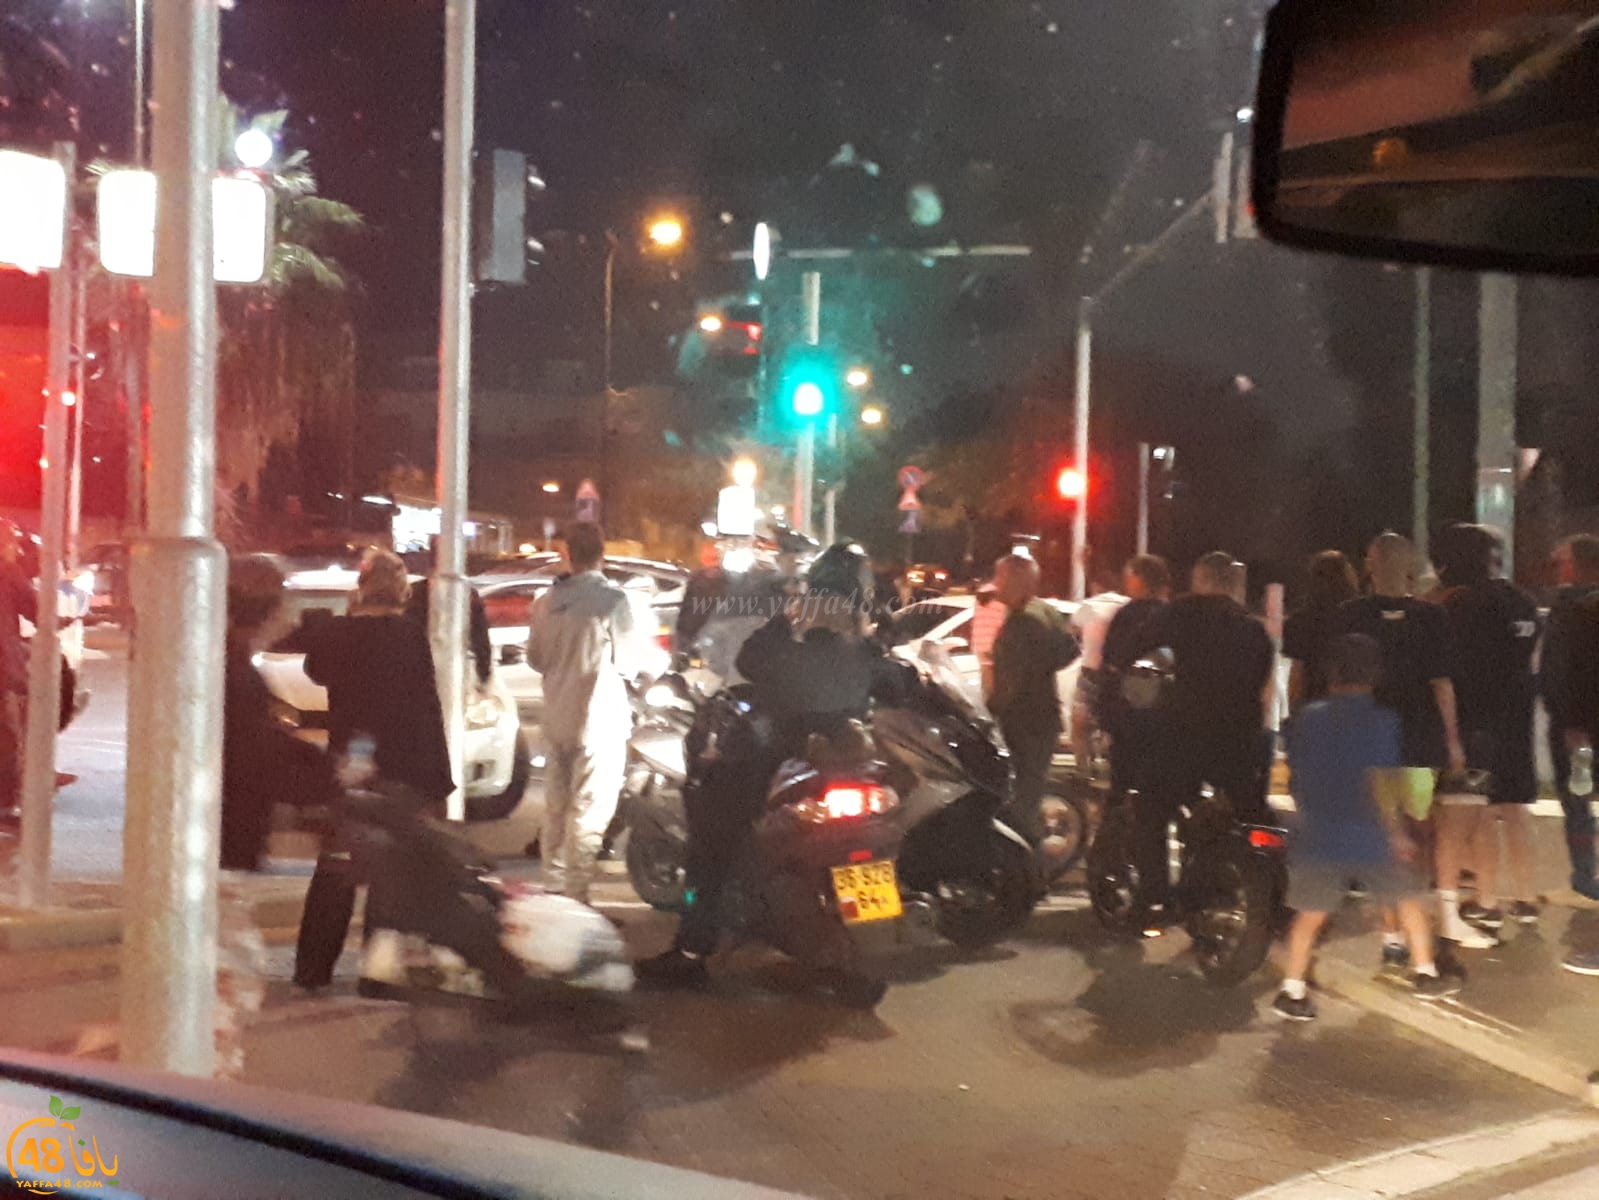    بالصور: اصابة طفيفة لراكب دراجة كهربائية بحادث دهس بيافا